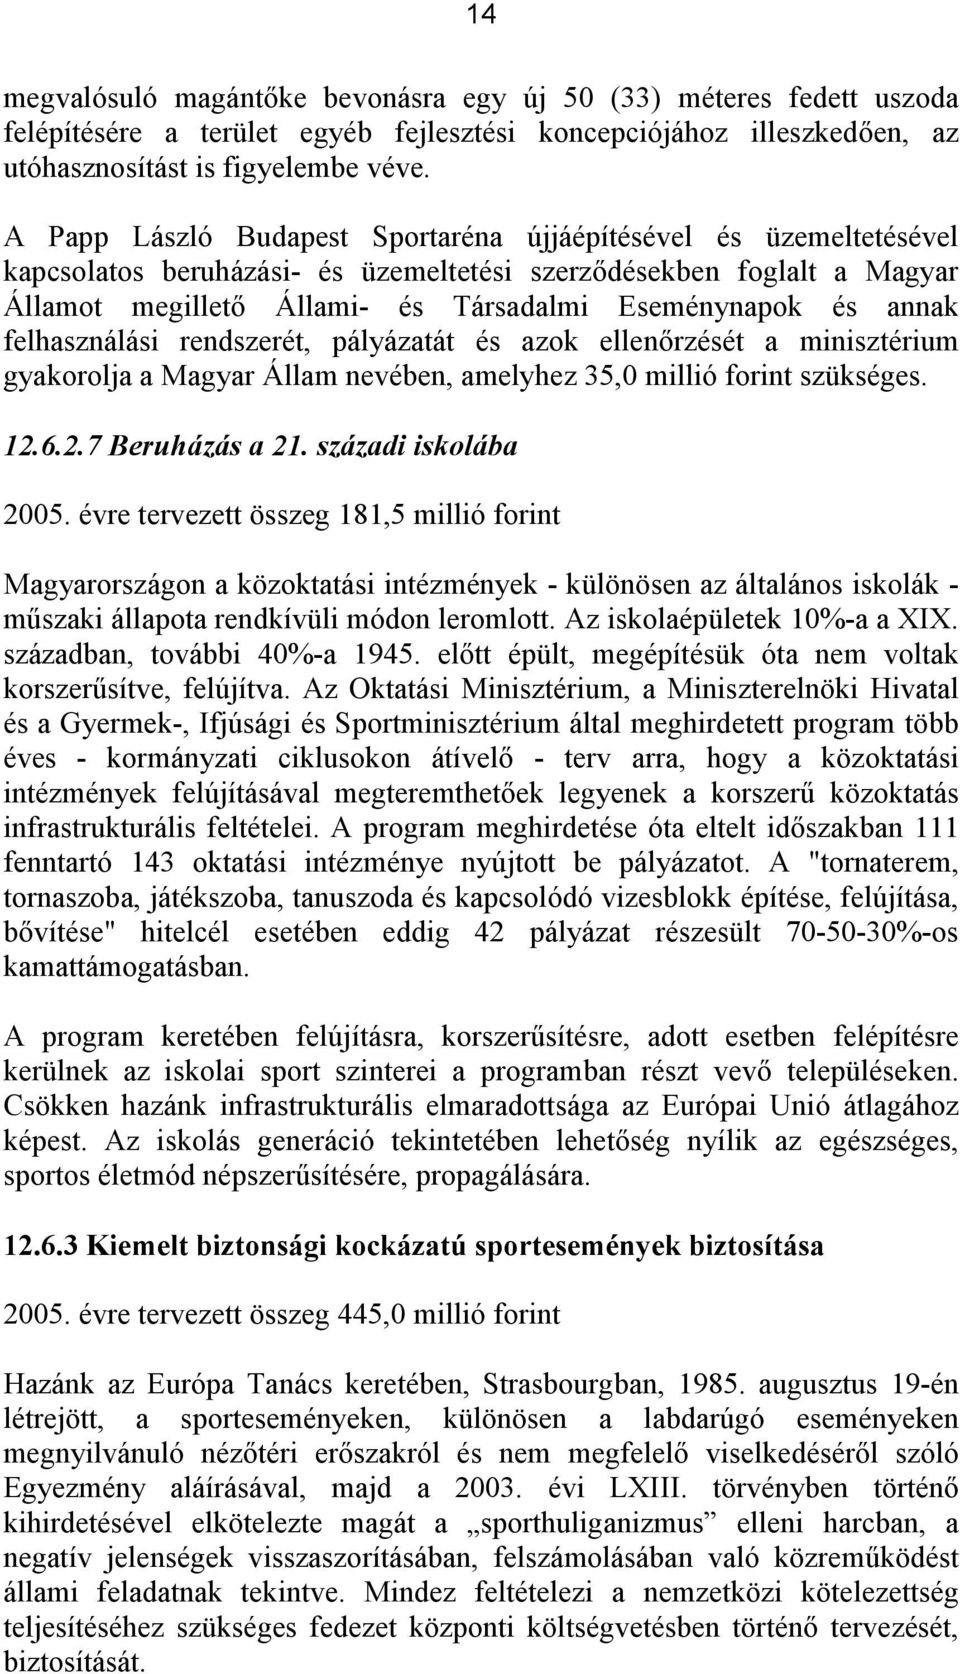 annak felhasználási rendszerét, pályázatát és azok ellenőrzését a minisztérium gyakorolja a Magyar Állam nevében, amelyhez 35,0 millió forint szükséges. 12.6.2.7 Beruházás a 21. századi iskolába 2005.